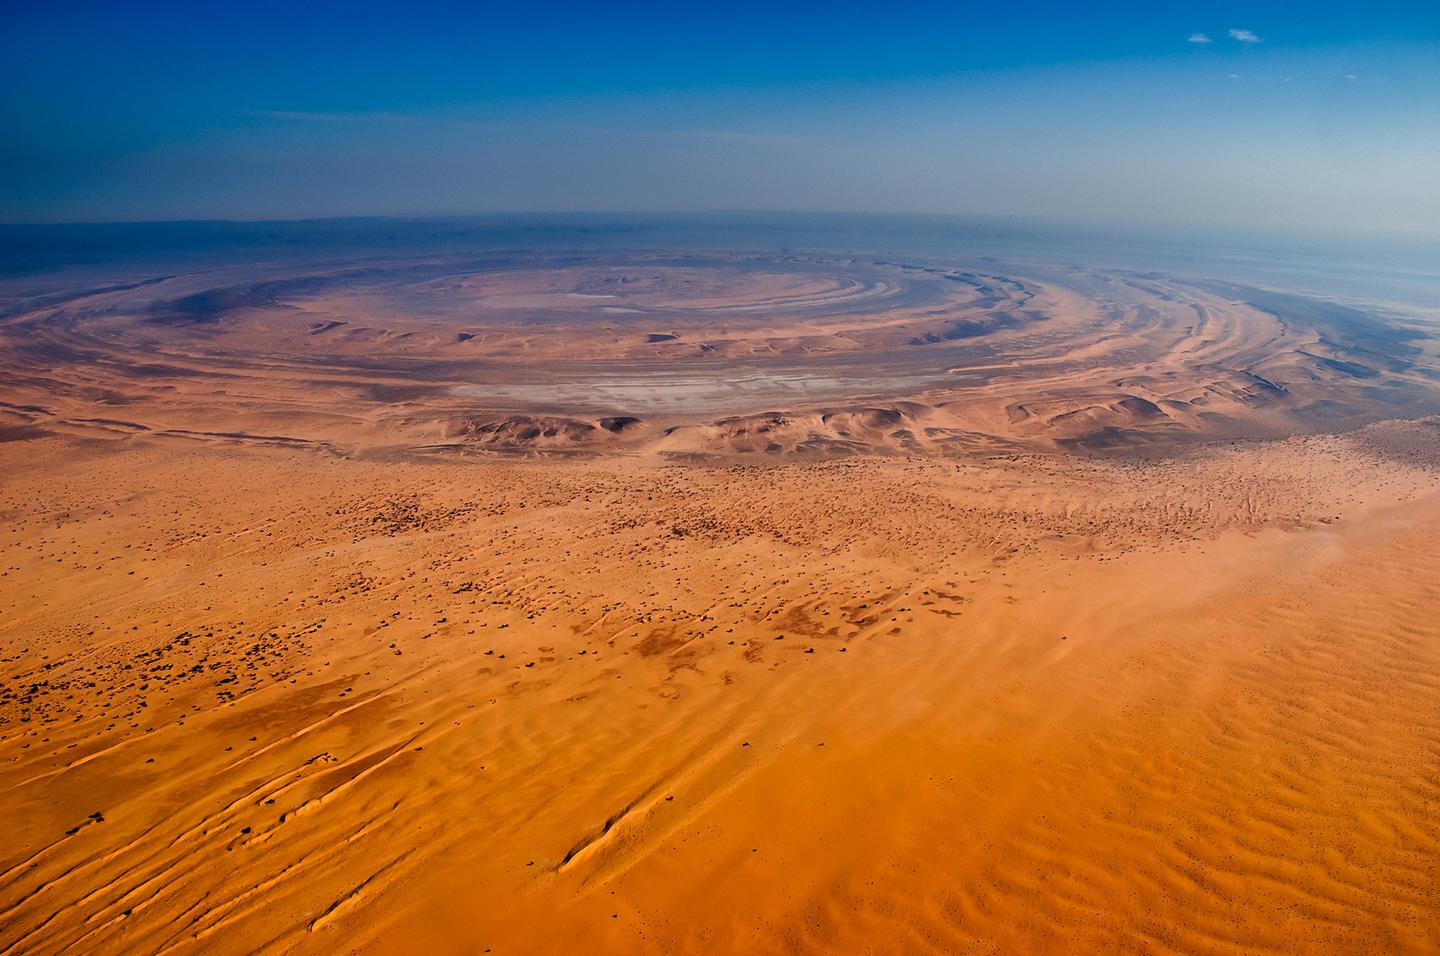 這一生請你一定要去一次撒哈拉沙漠。